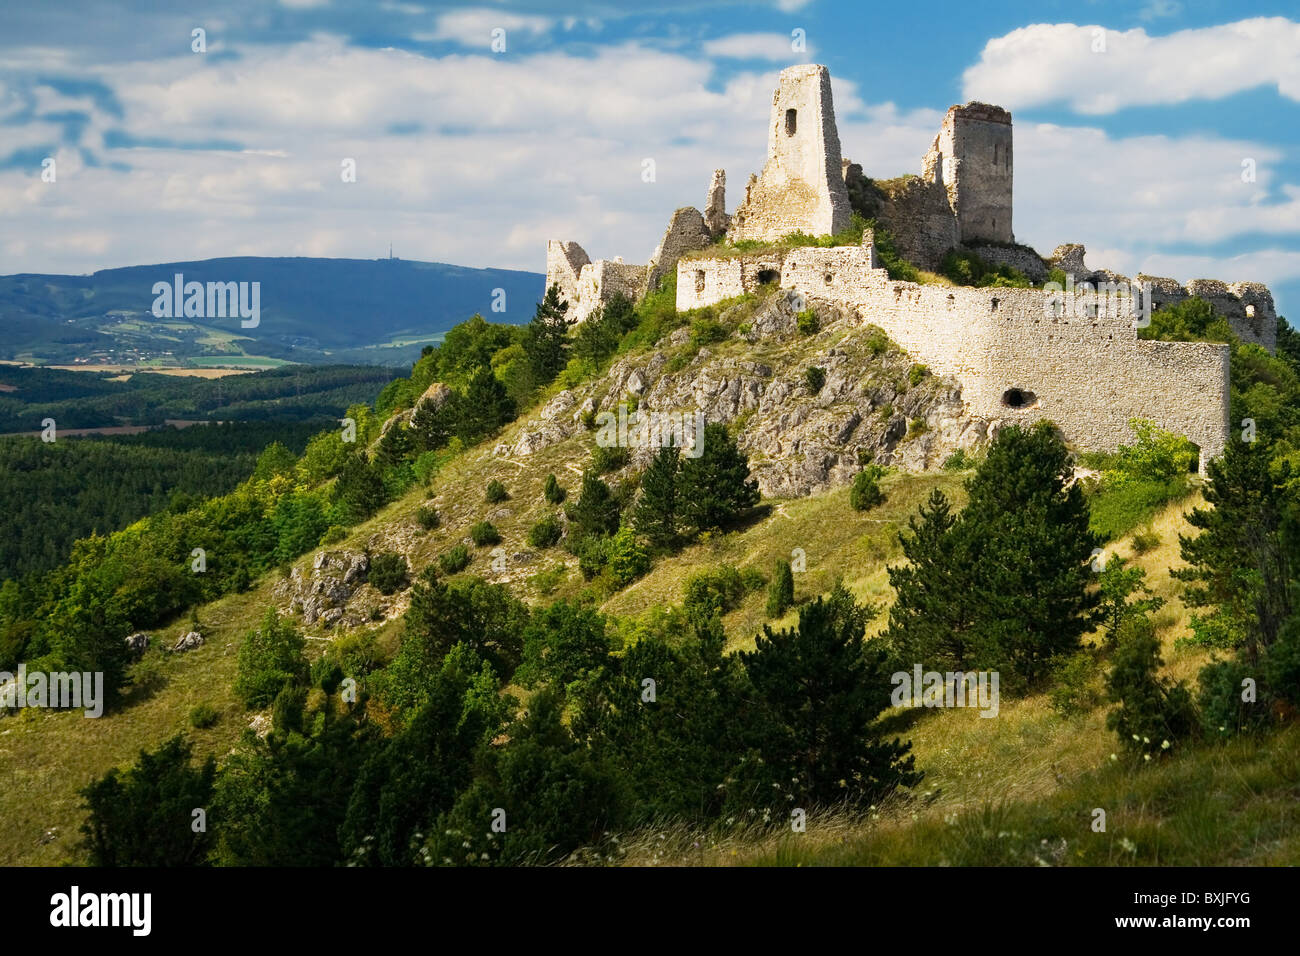 Les ruines du château de Cachtice - Slovaquie Banque D'Images